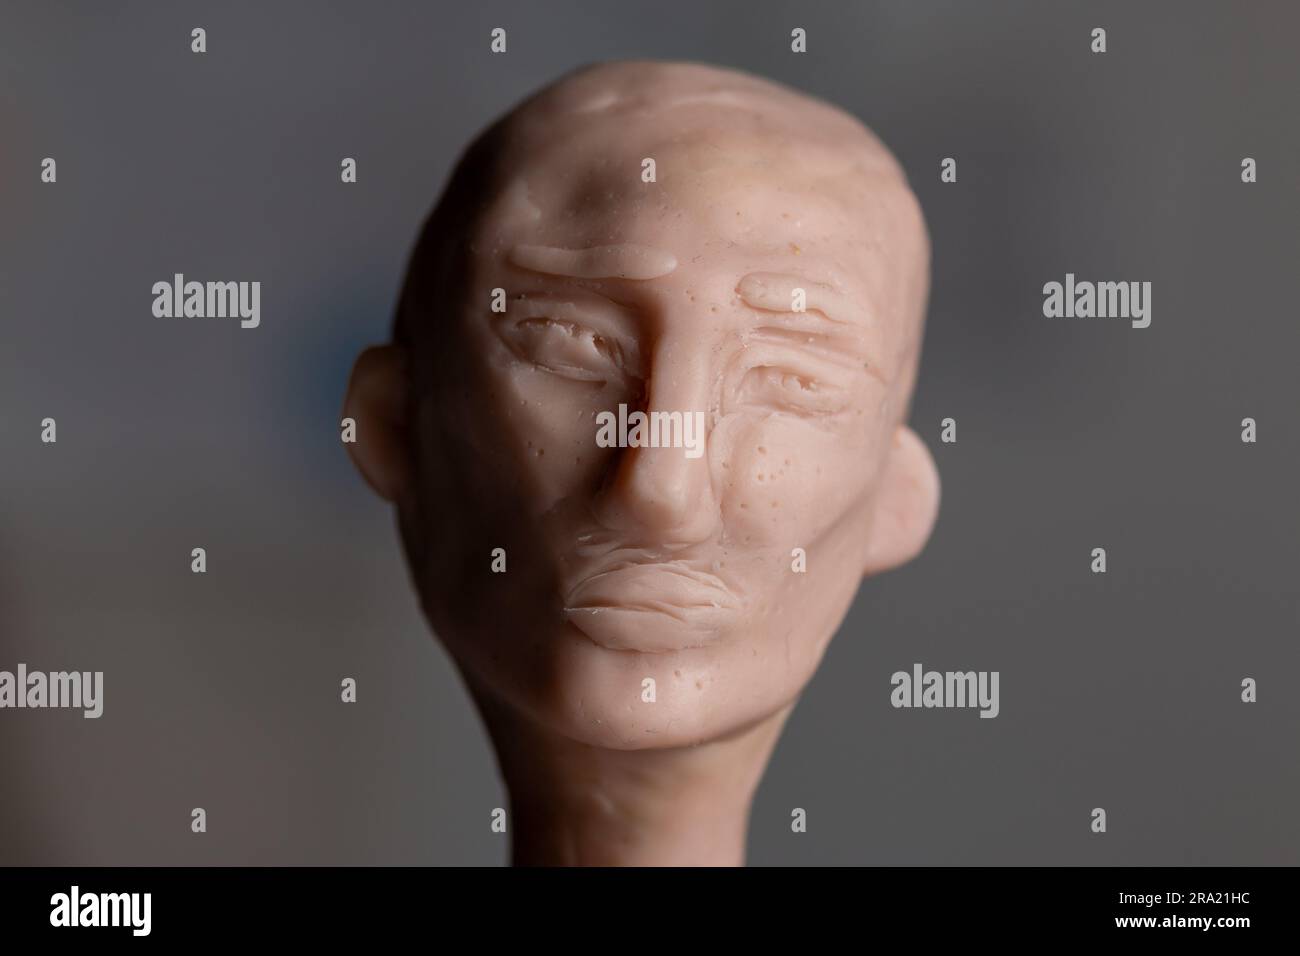 Une sculpture d'une tête avec une expression mélancolique faite de polymère argile Scuppey. Banque D'Images